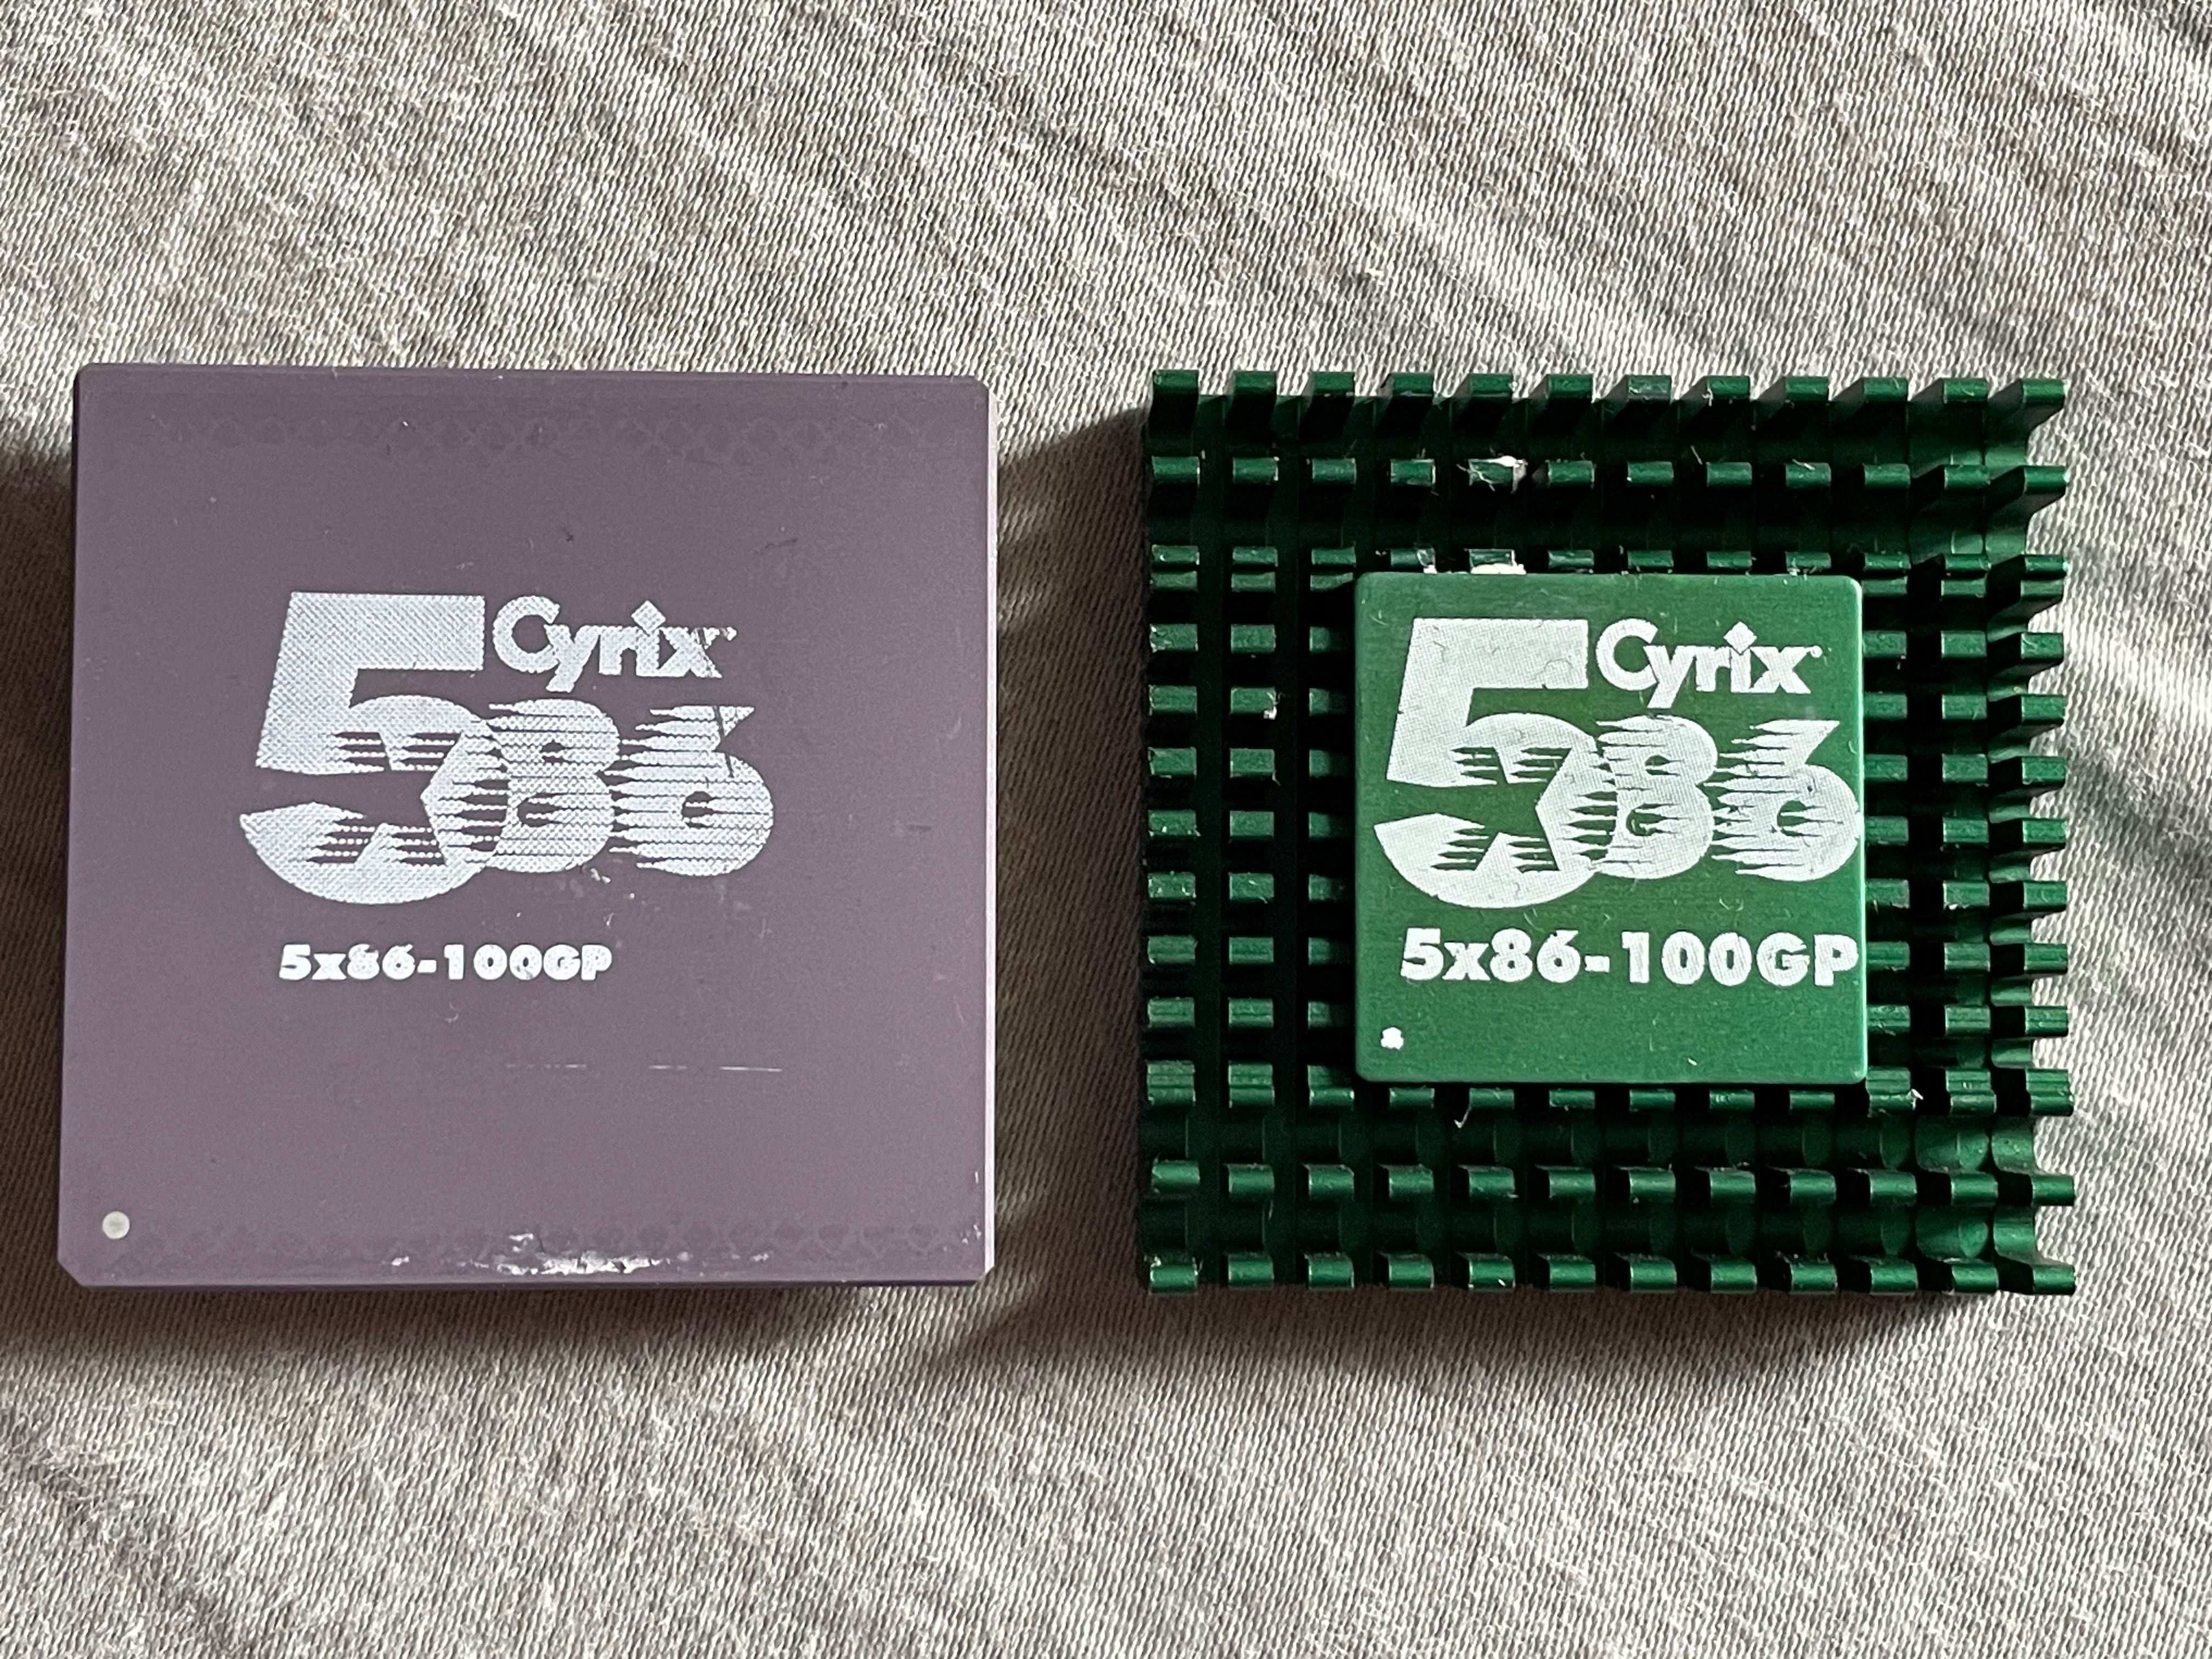 Procesor Cyrix 586